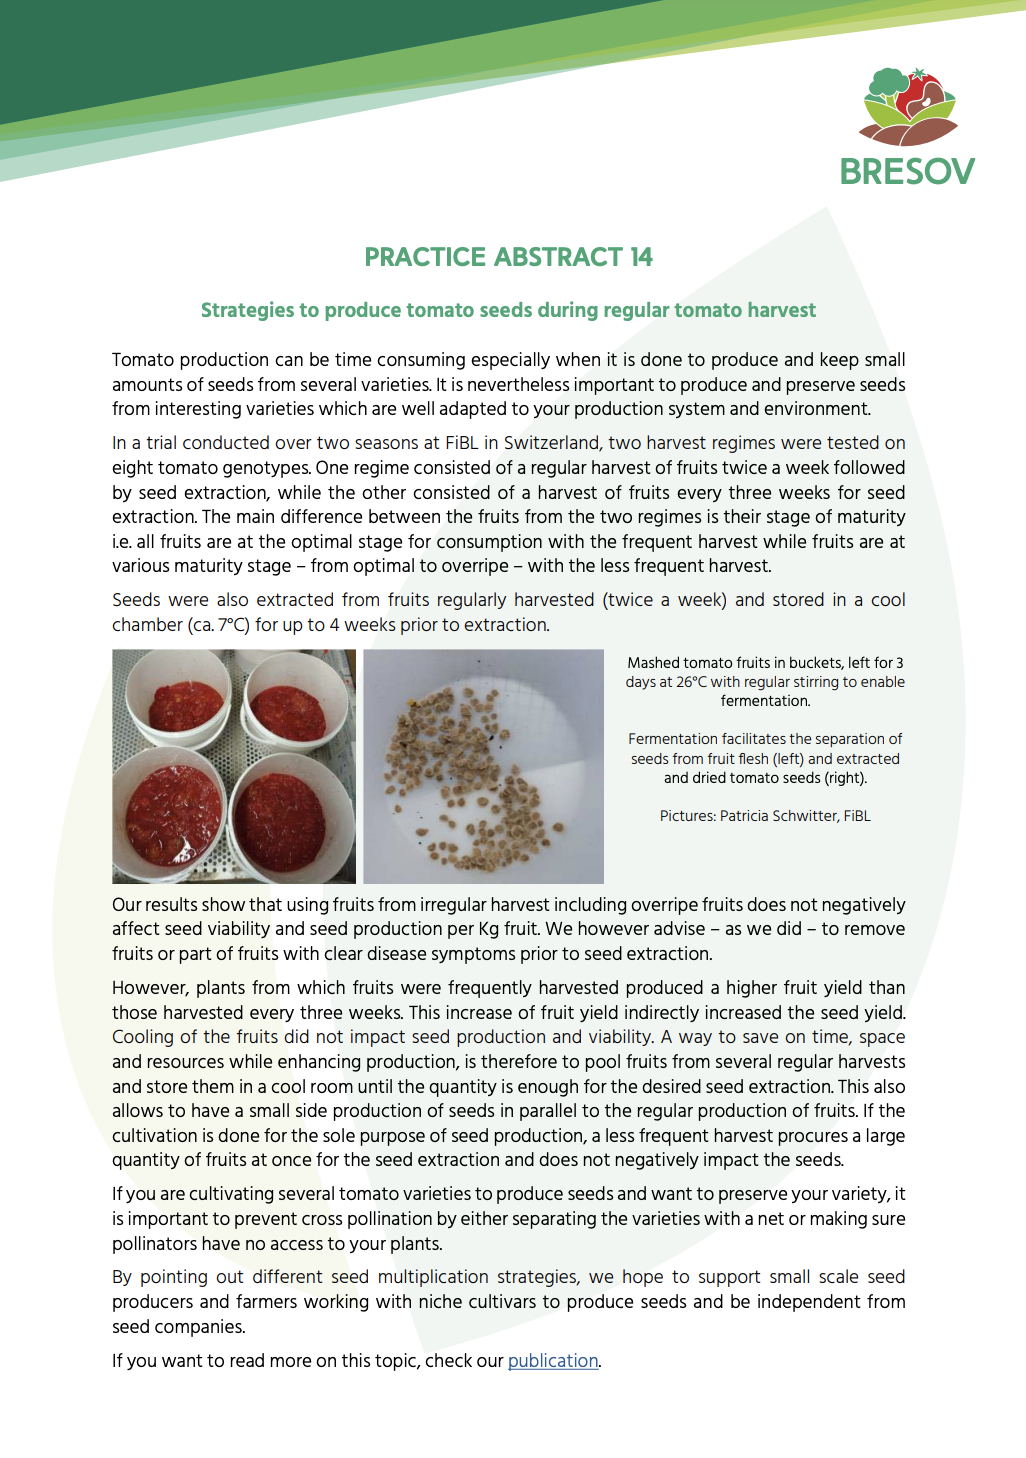 Стратегии за производство на семена от домати по време на редовна реколта от домати (Резюме от практиката на BRESOV)